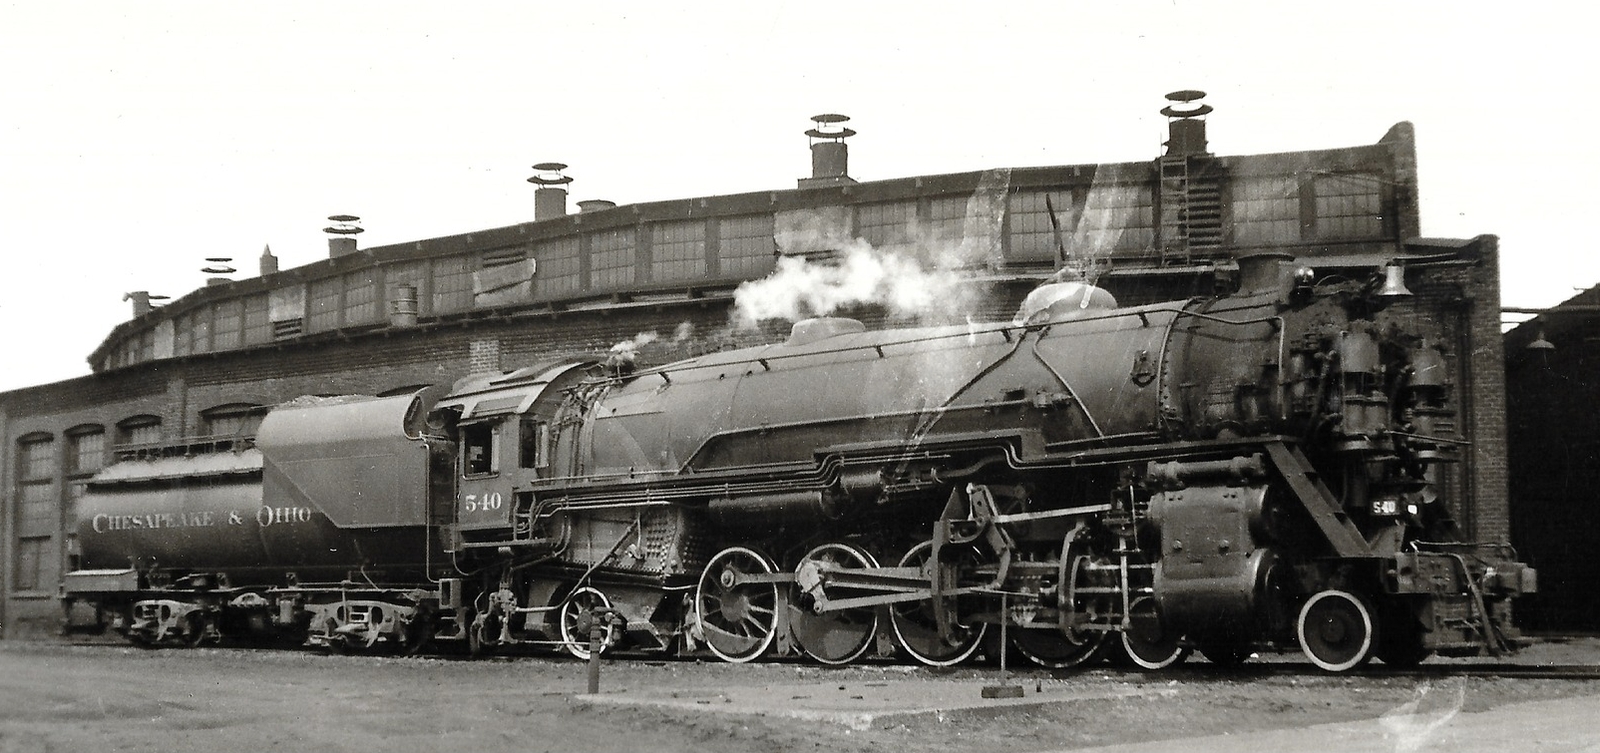 No. 540 in 1934 in Columbus, Ohio